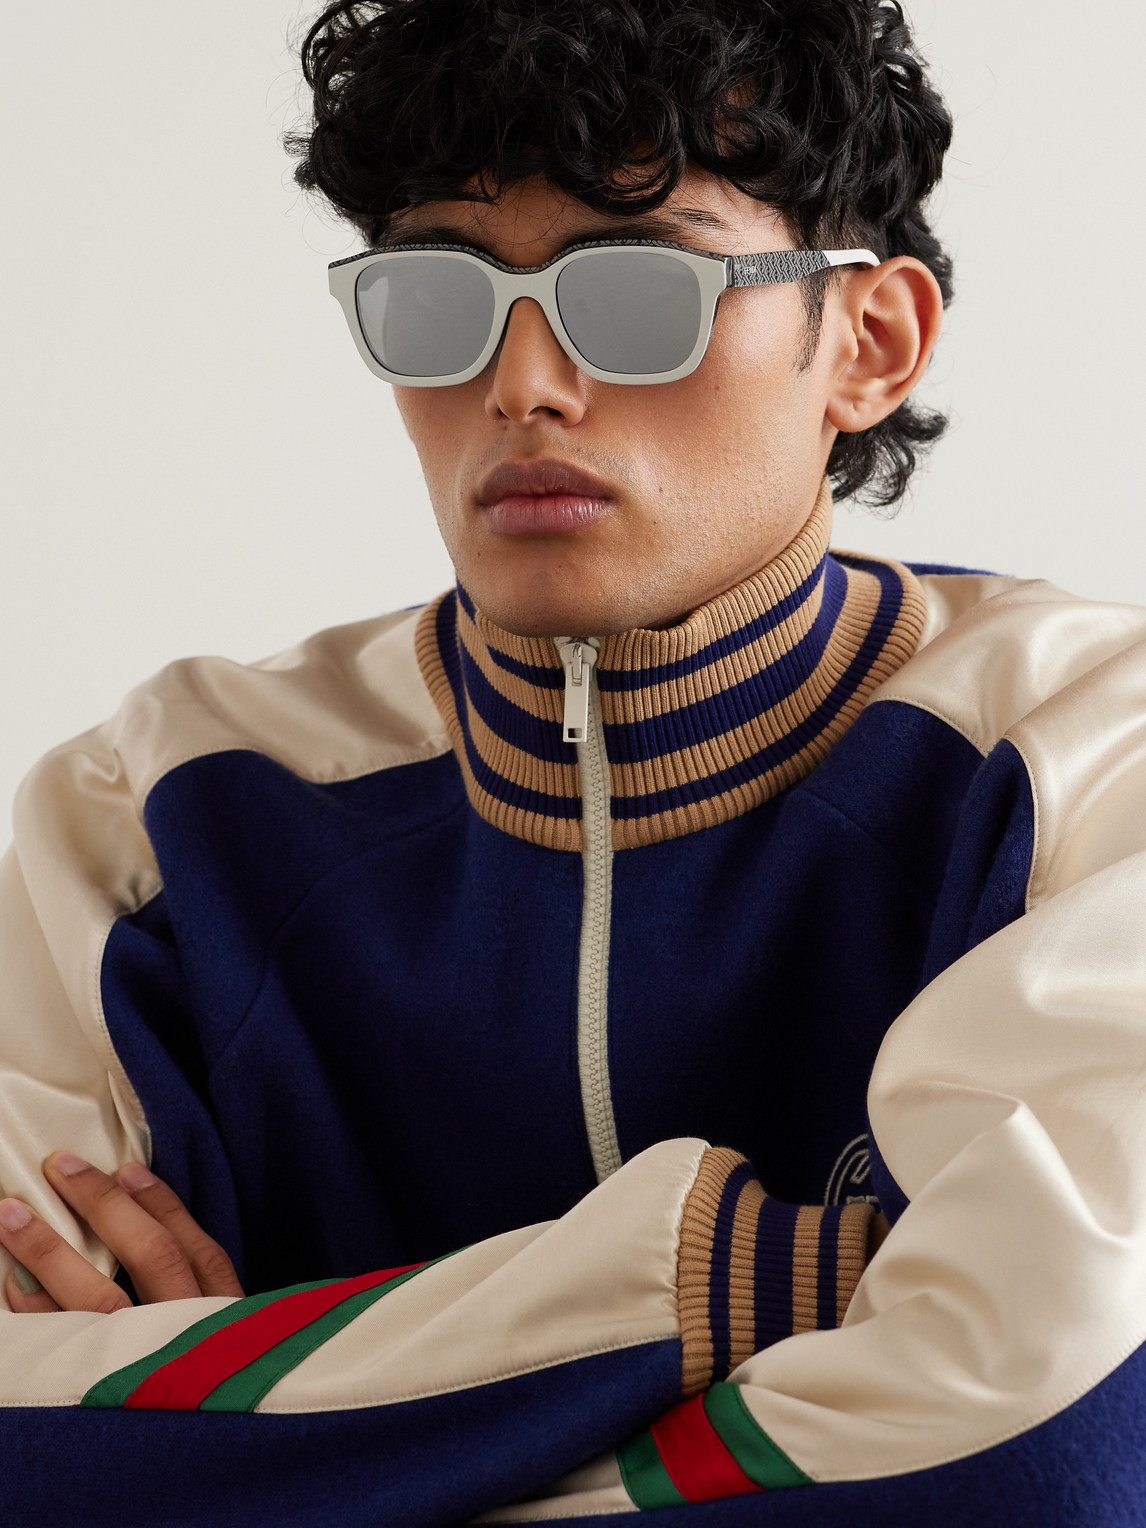 Shop Fendi Bilayer Square-frame Acetate Sunglasses In Neutrals